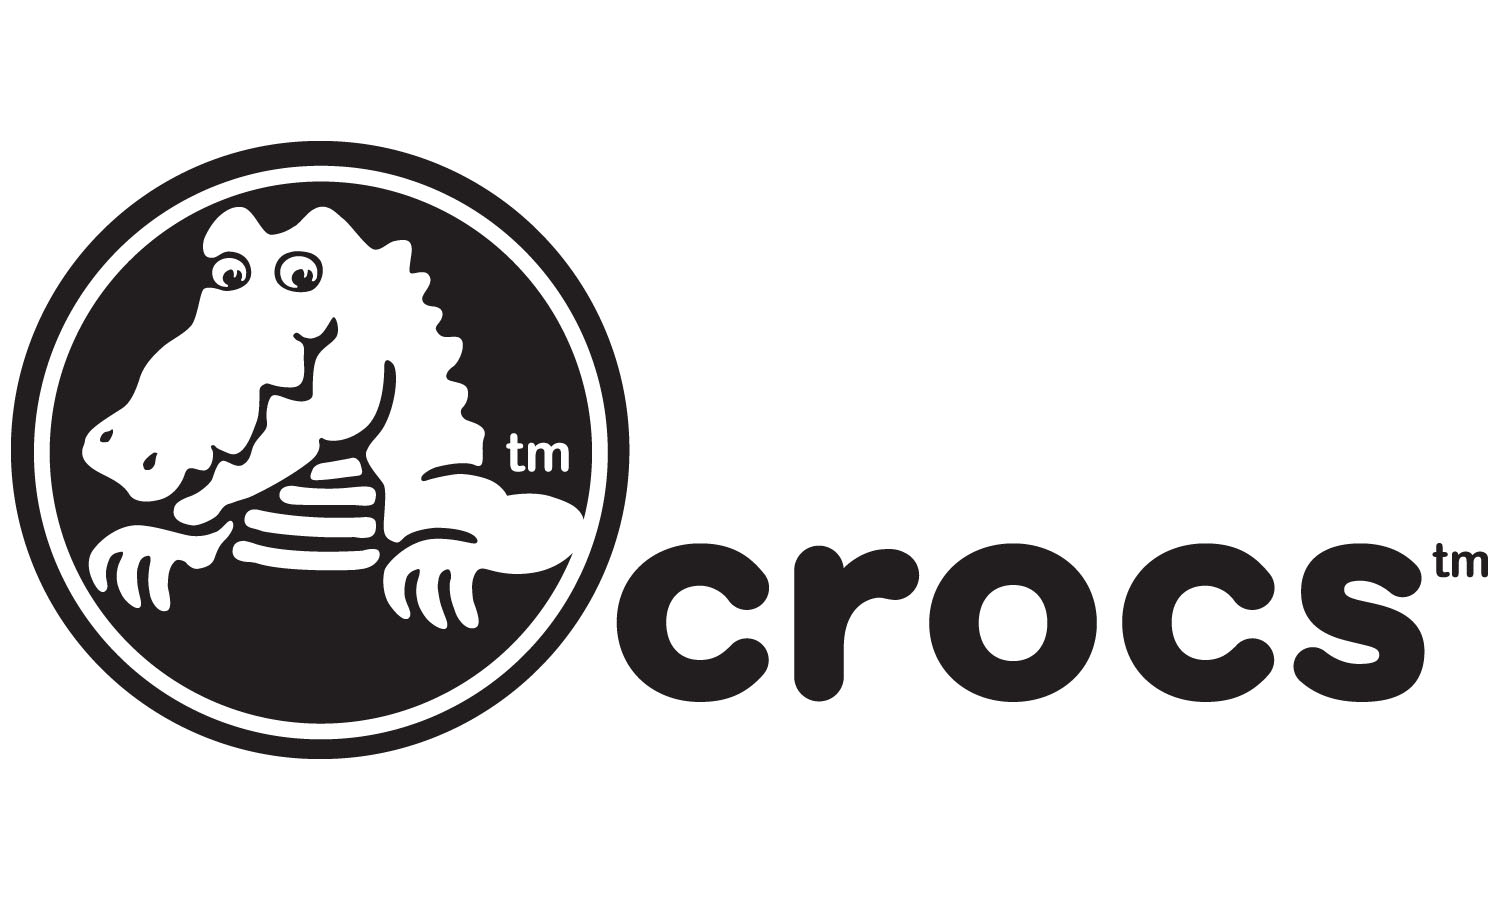 crocs_logo.jpg